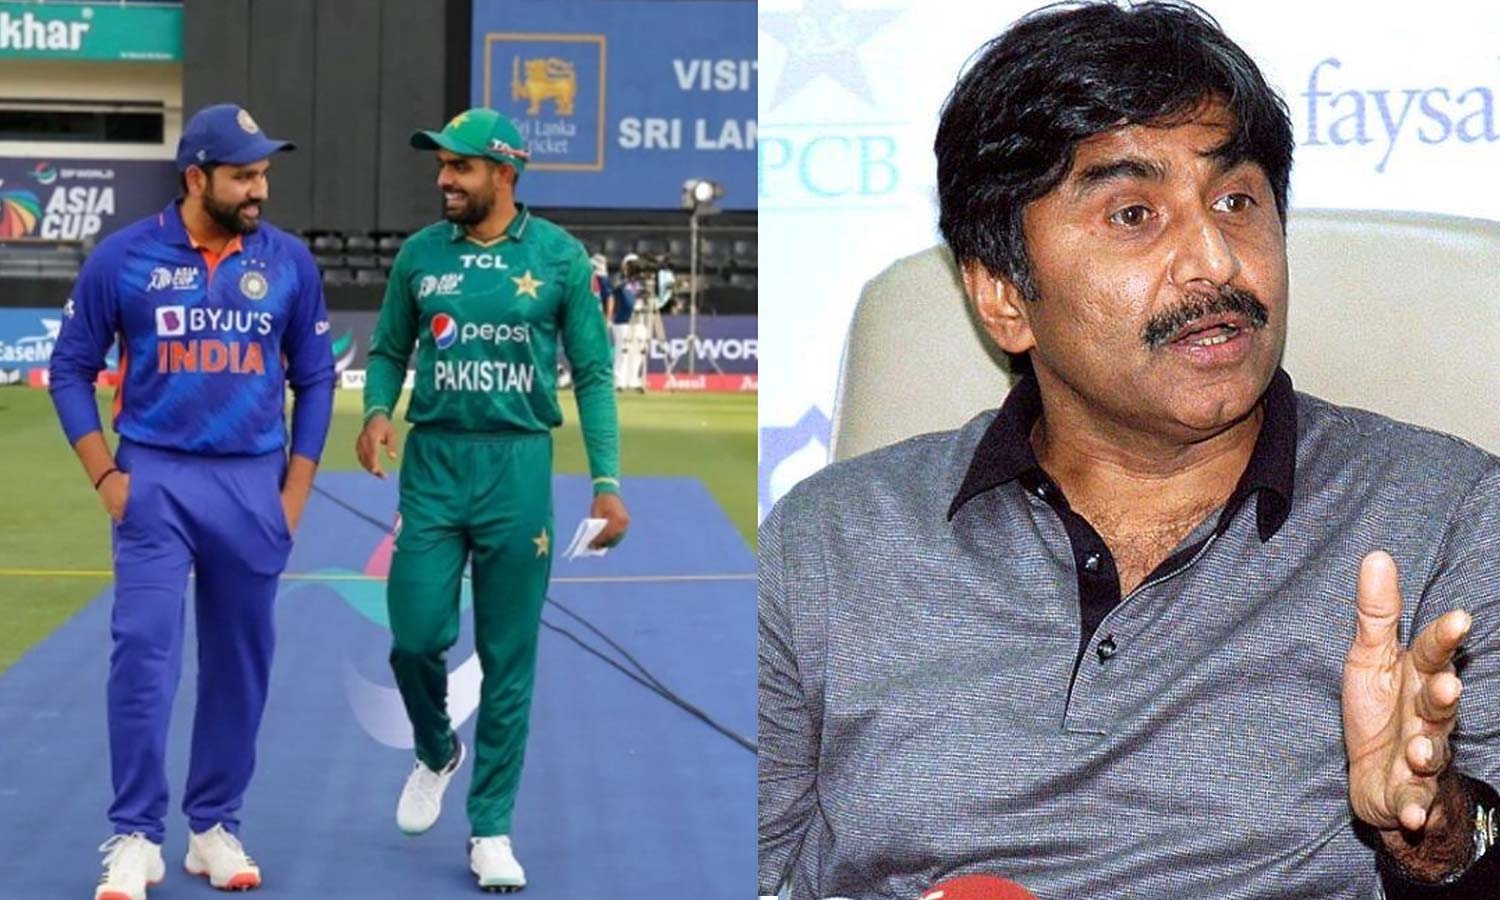 ICC mendenda India karena menolak bermain di Pakistan untuk dihilangkan – mantan pemain menegaskan